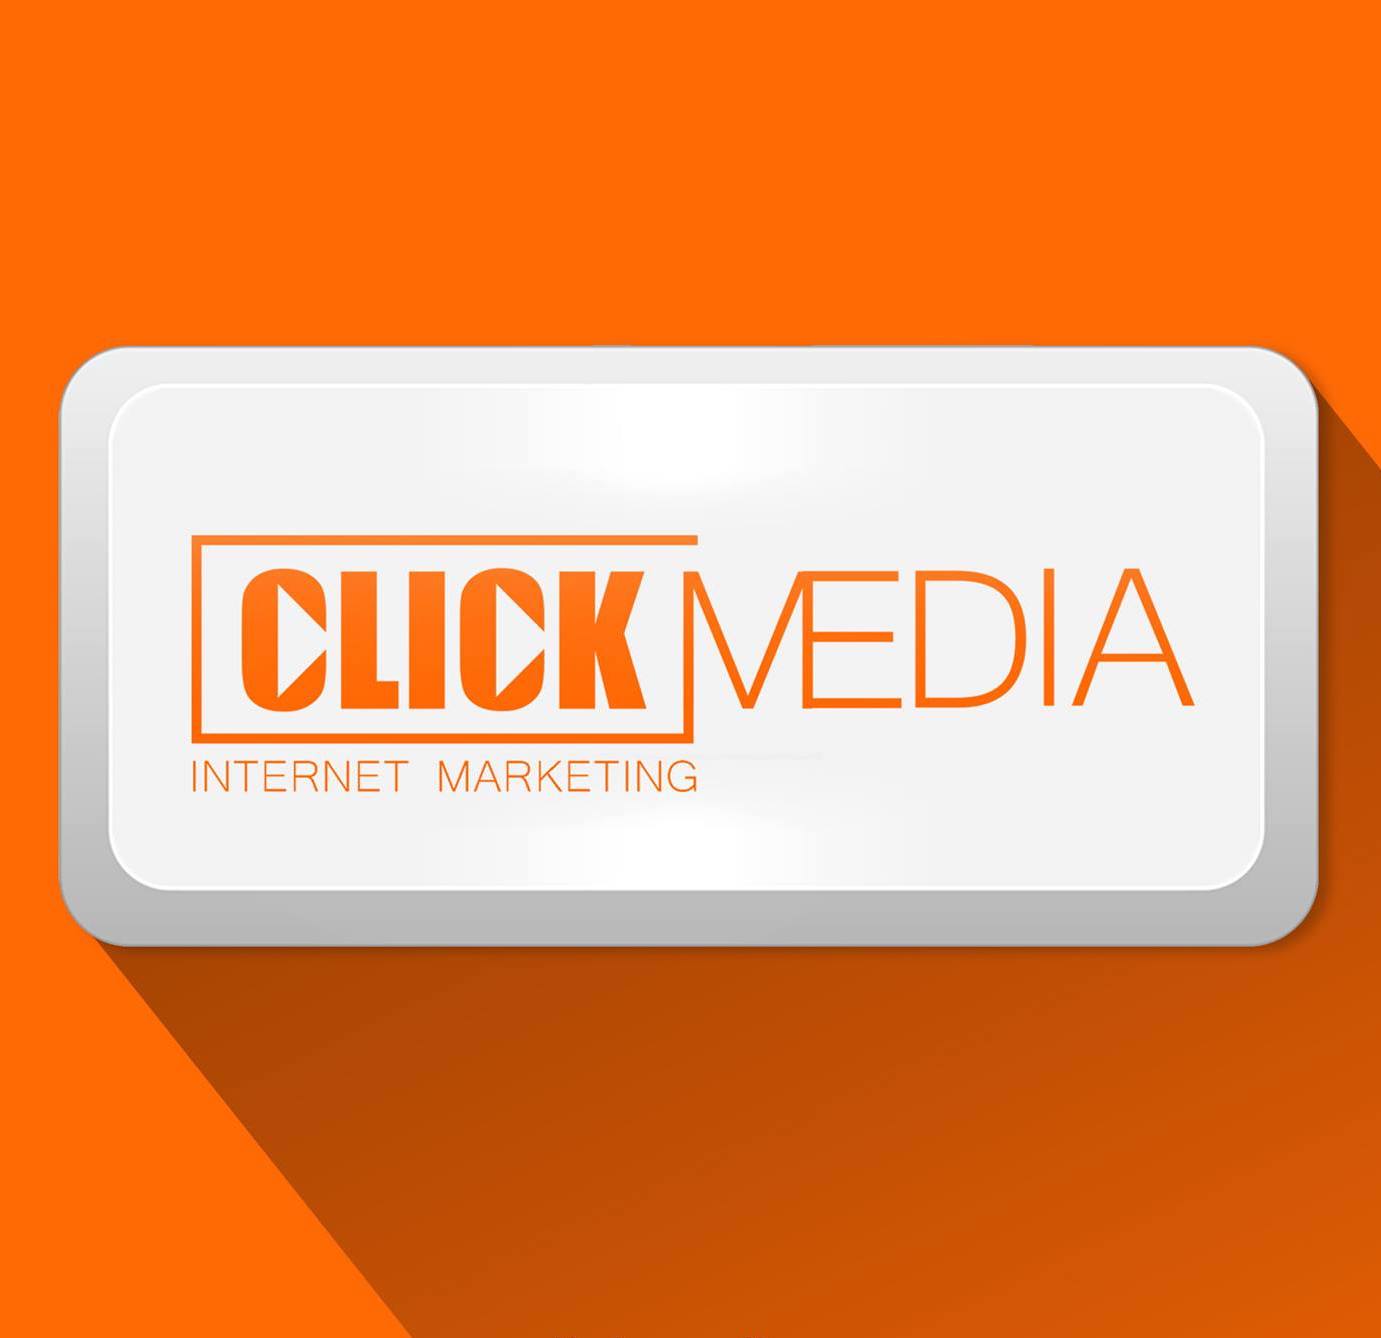 Click Media